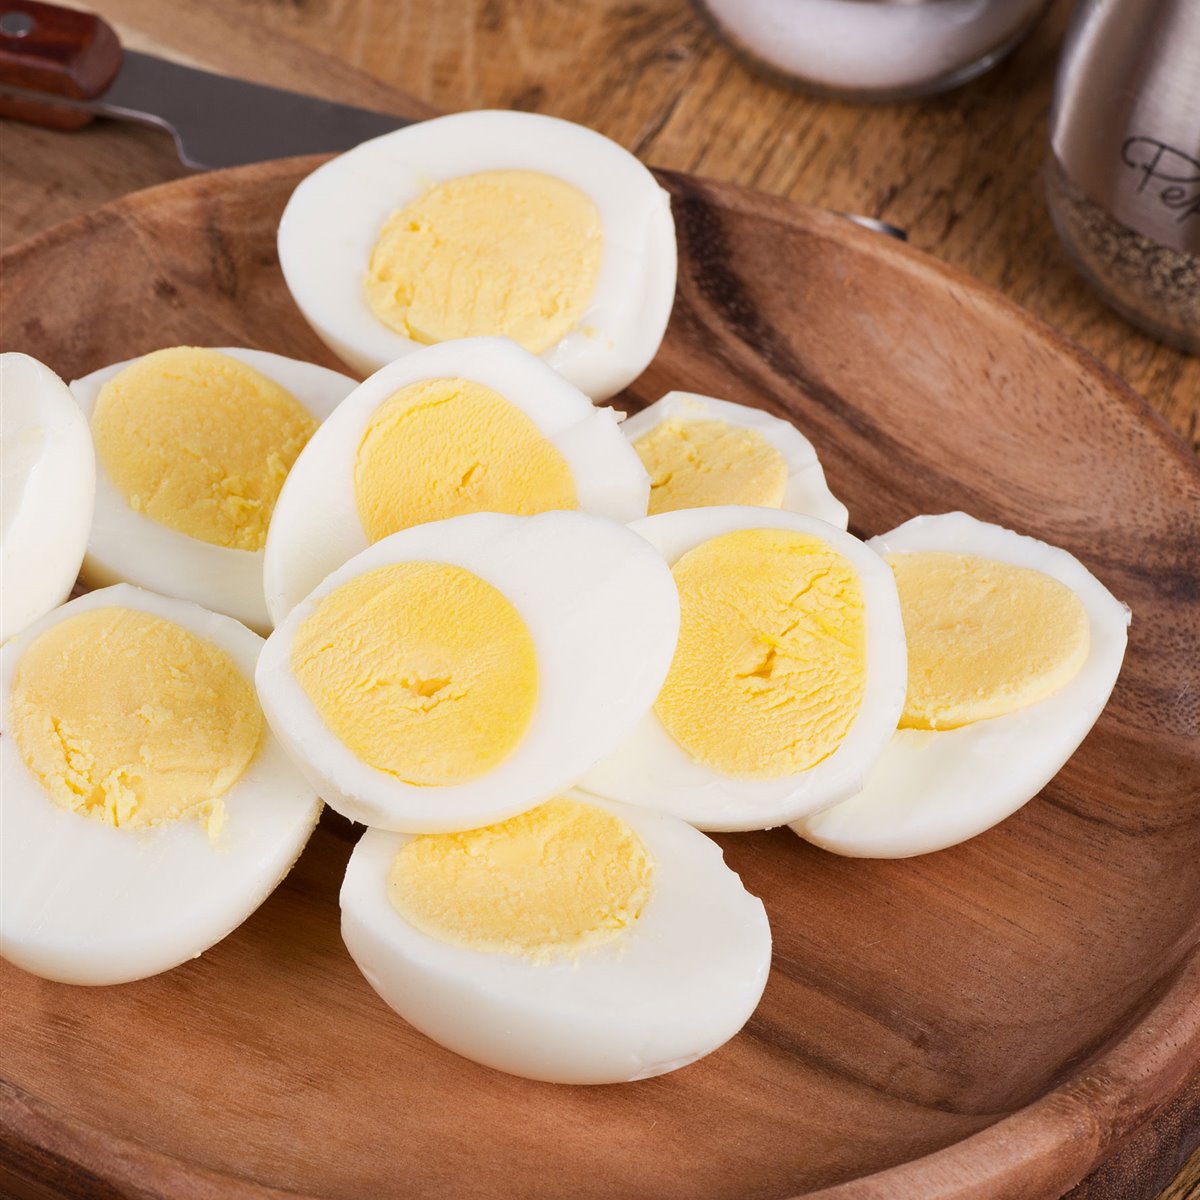 Un domingo en mi cocina: Trucos: Huevos duros en el microondas